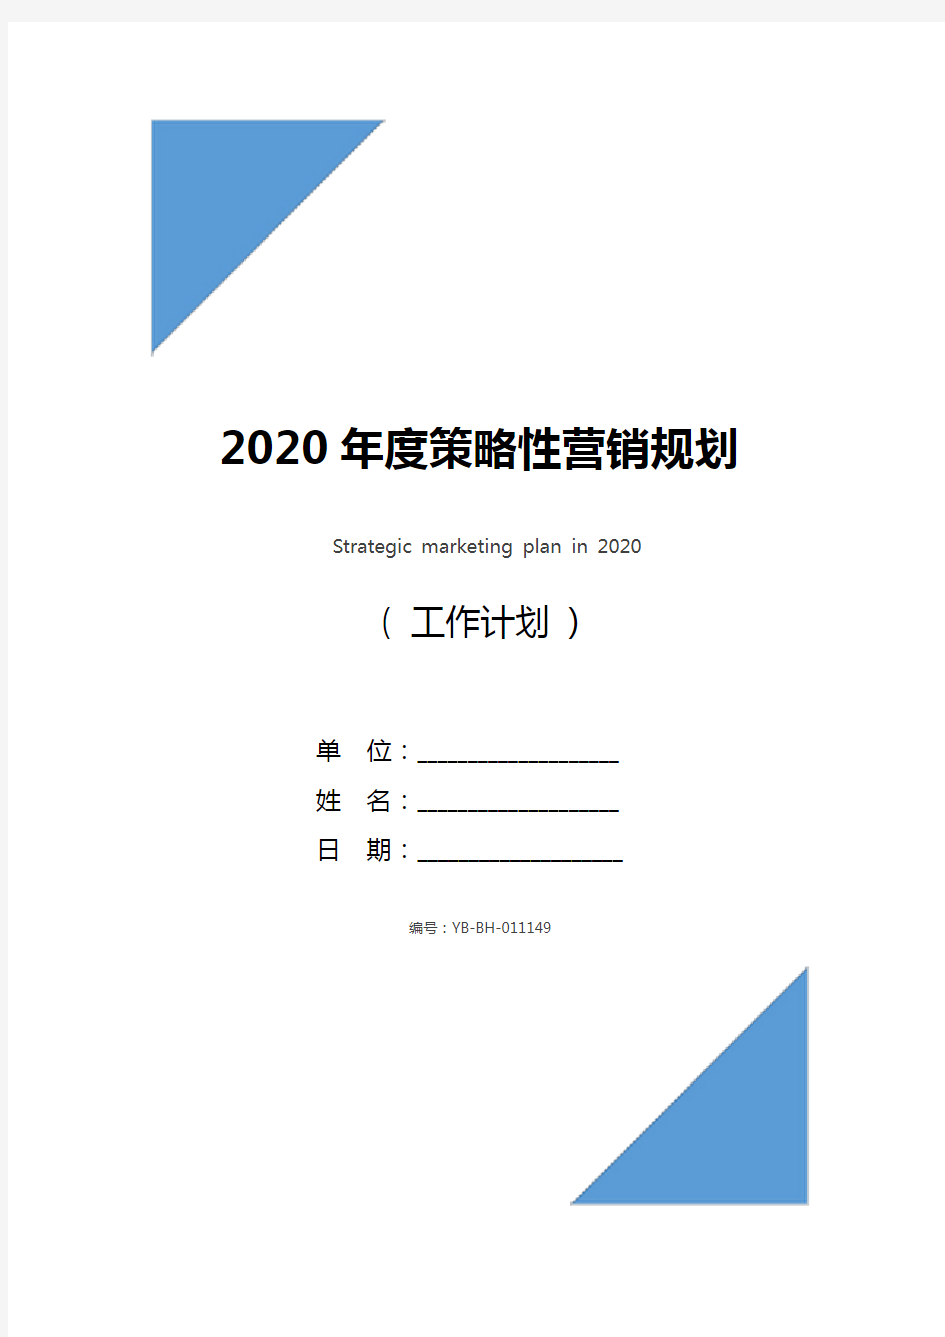 2020年度策略性营销规划